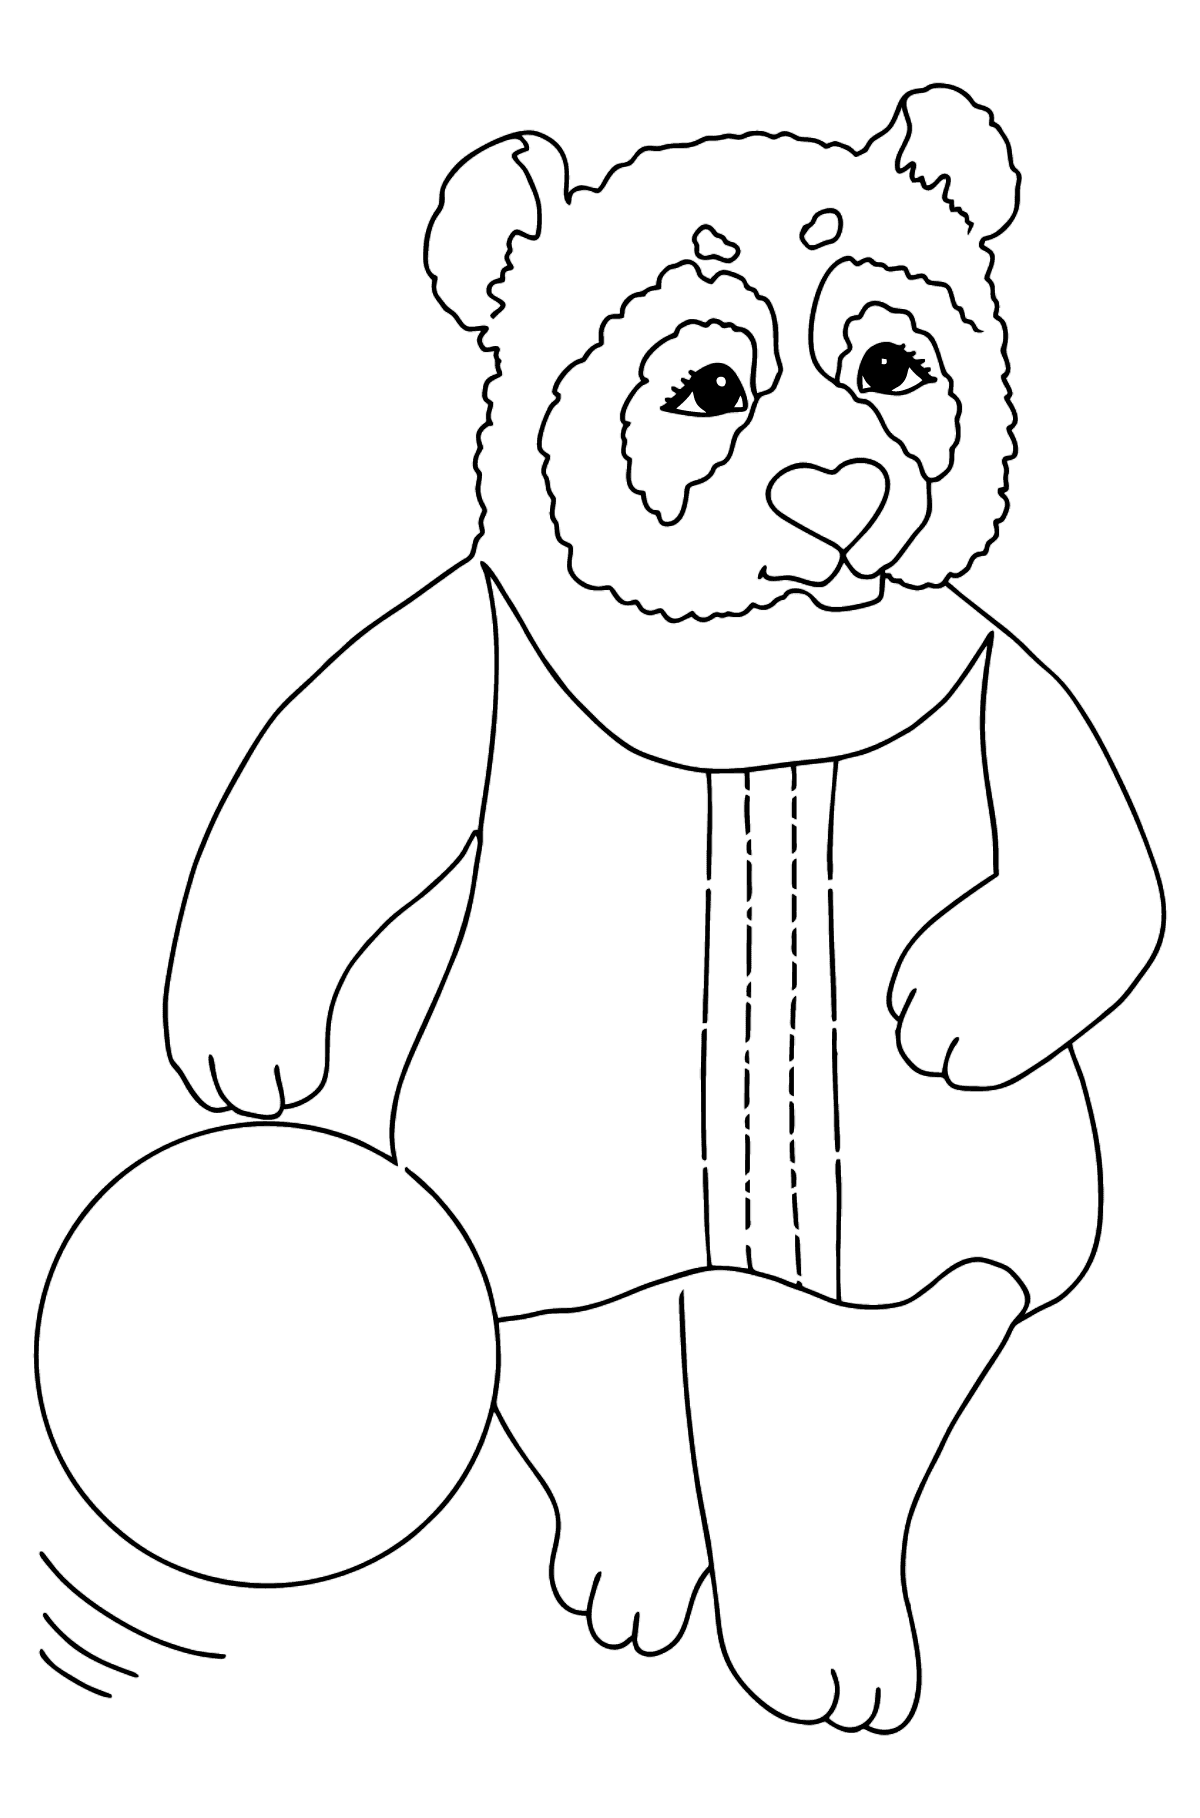 Dibujo de Panda Para Bebés (Simple) para colorear - Dibujos para Colorear para Niños